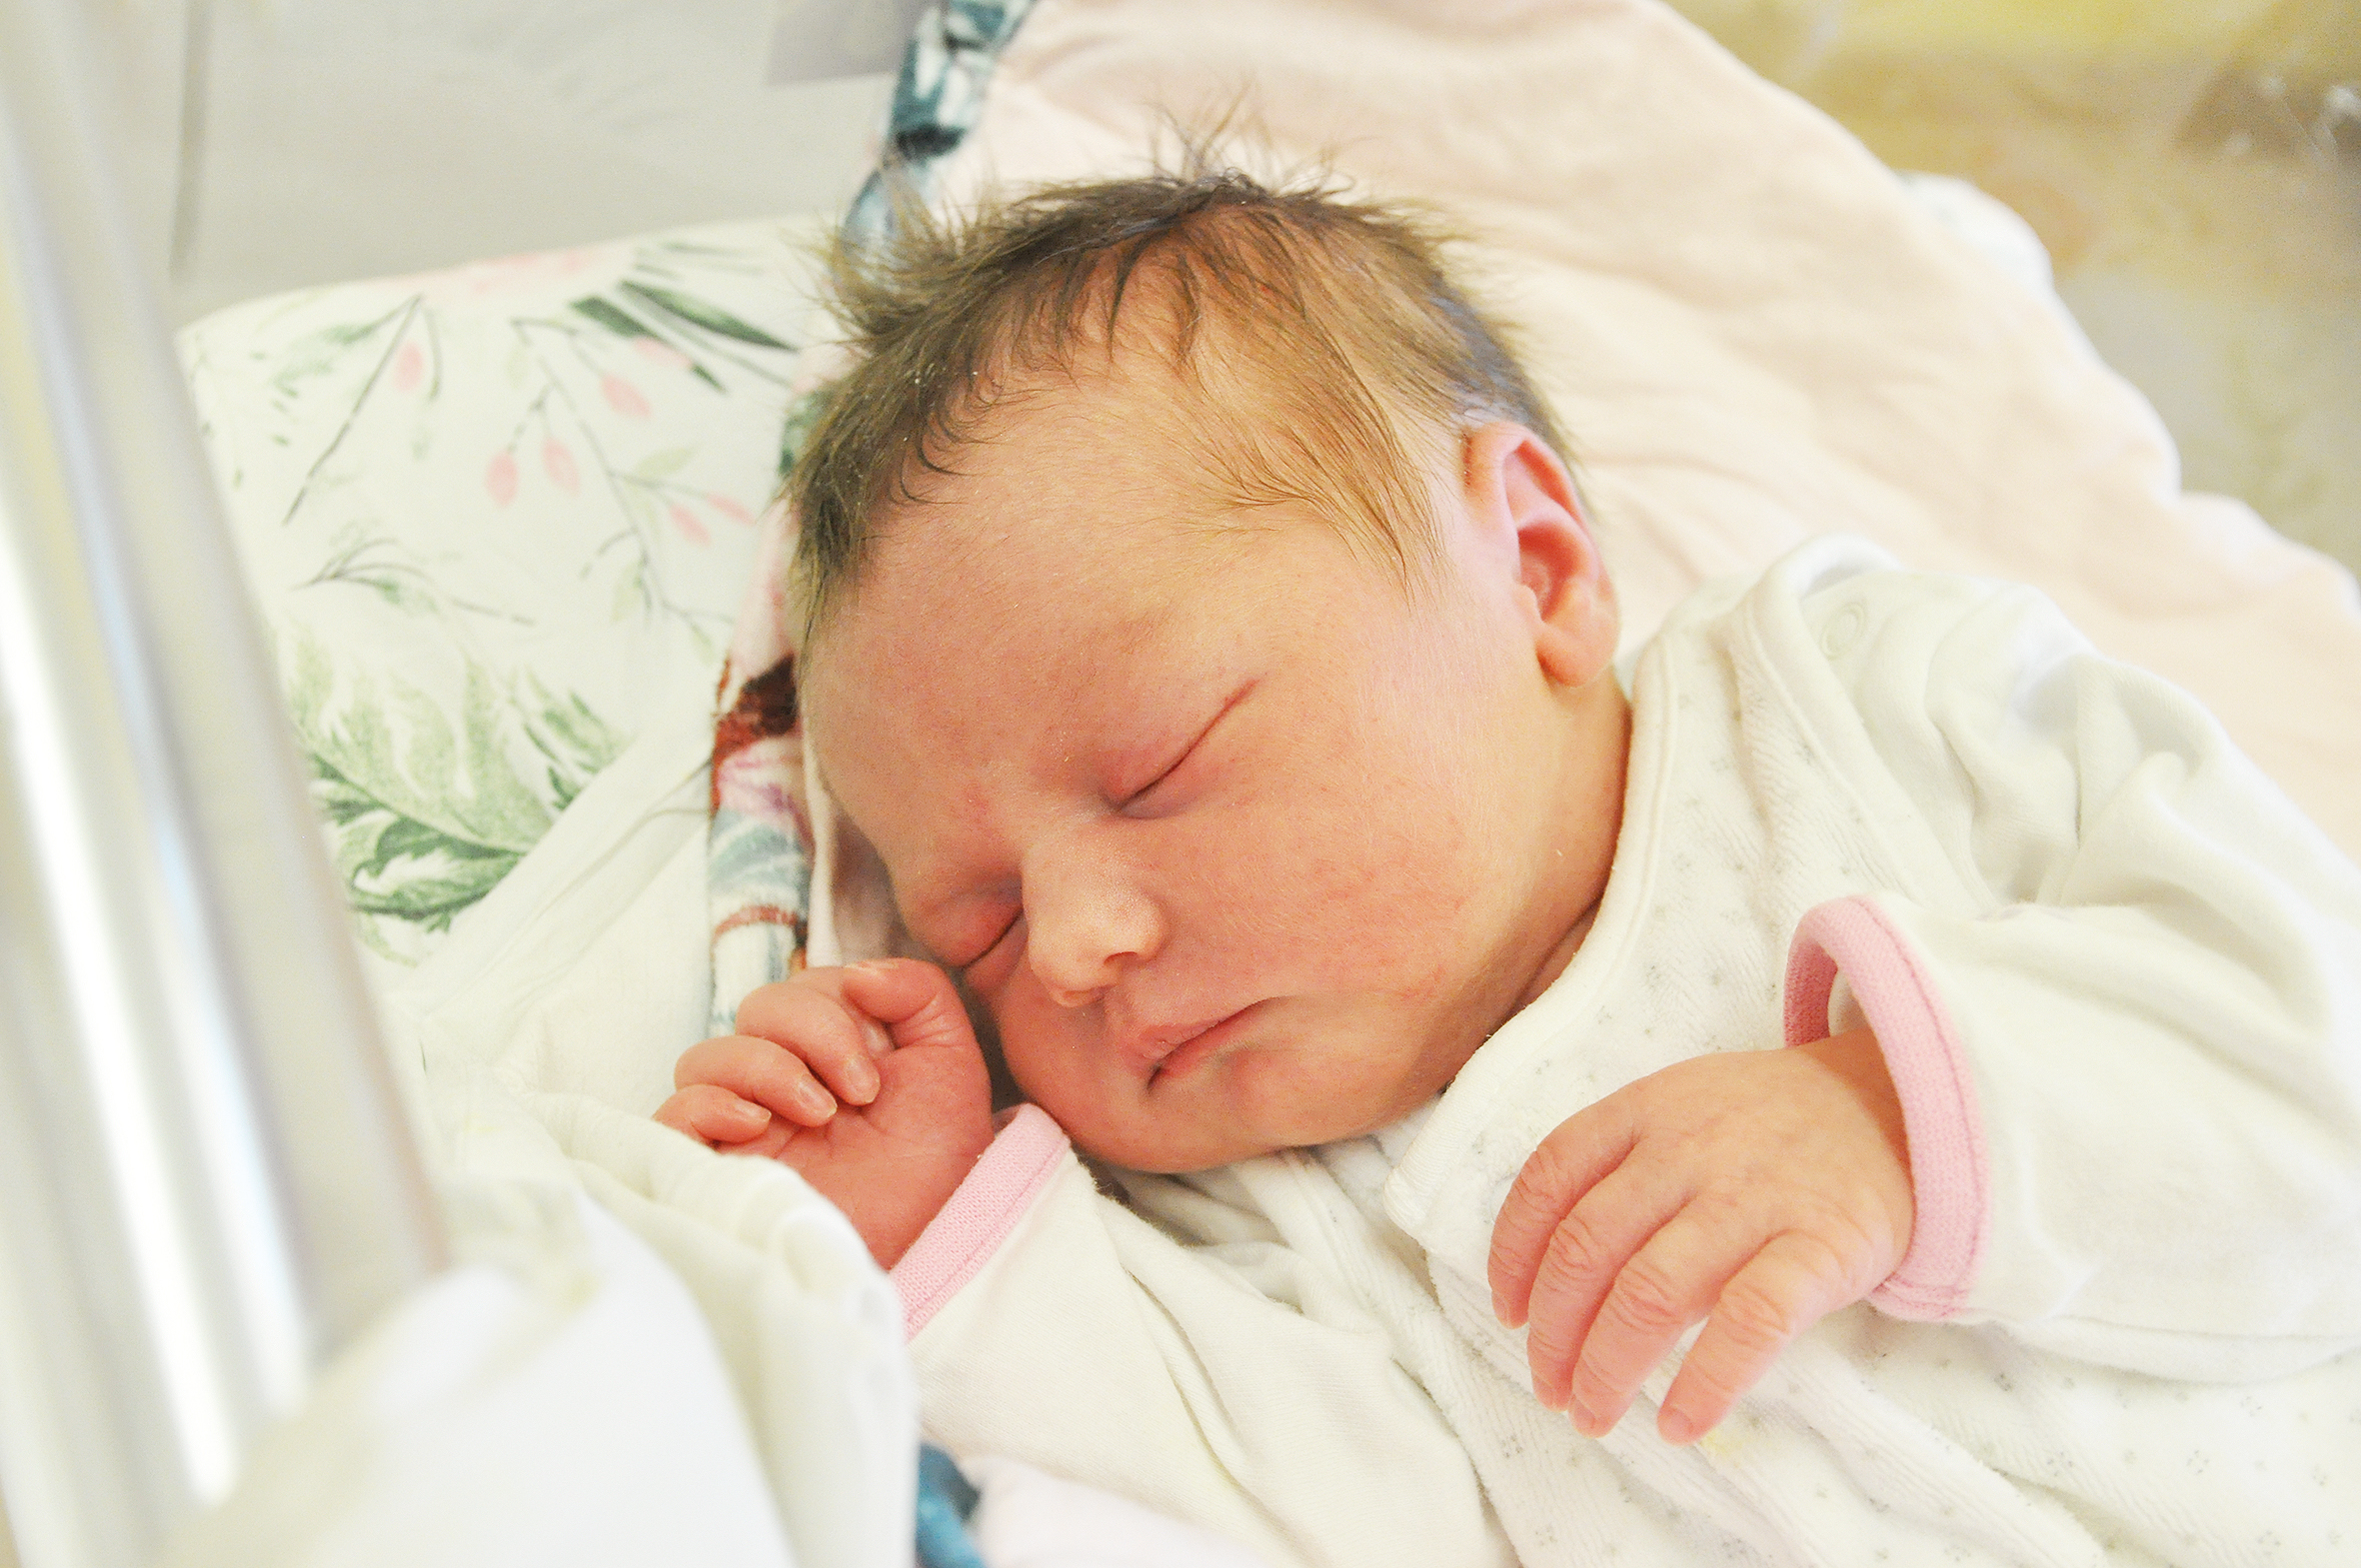 Ola Kamczyk jest córeczką Justyny i Michała z Kobyli. Urodziła się 8 maja o 1.18. W domu czekają na siostrę Szymek i Wojtek.